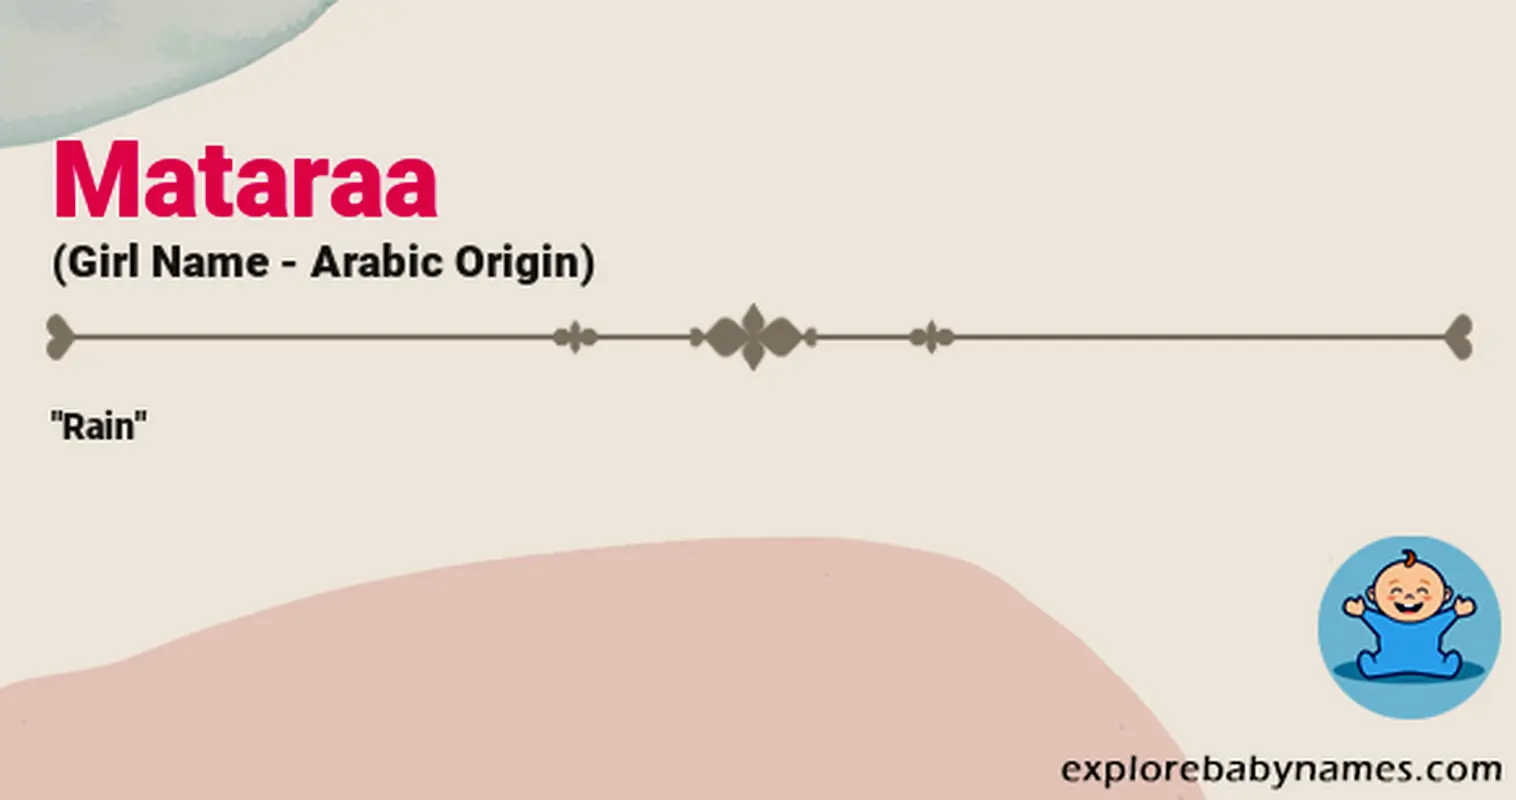 Meaning of Mataraa